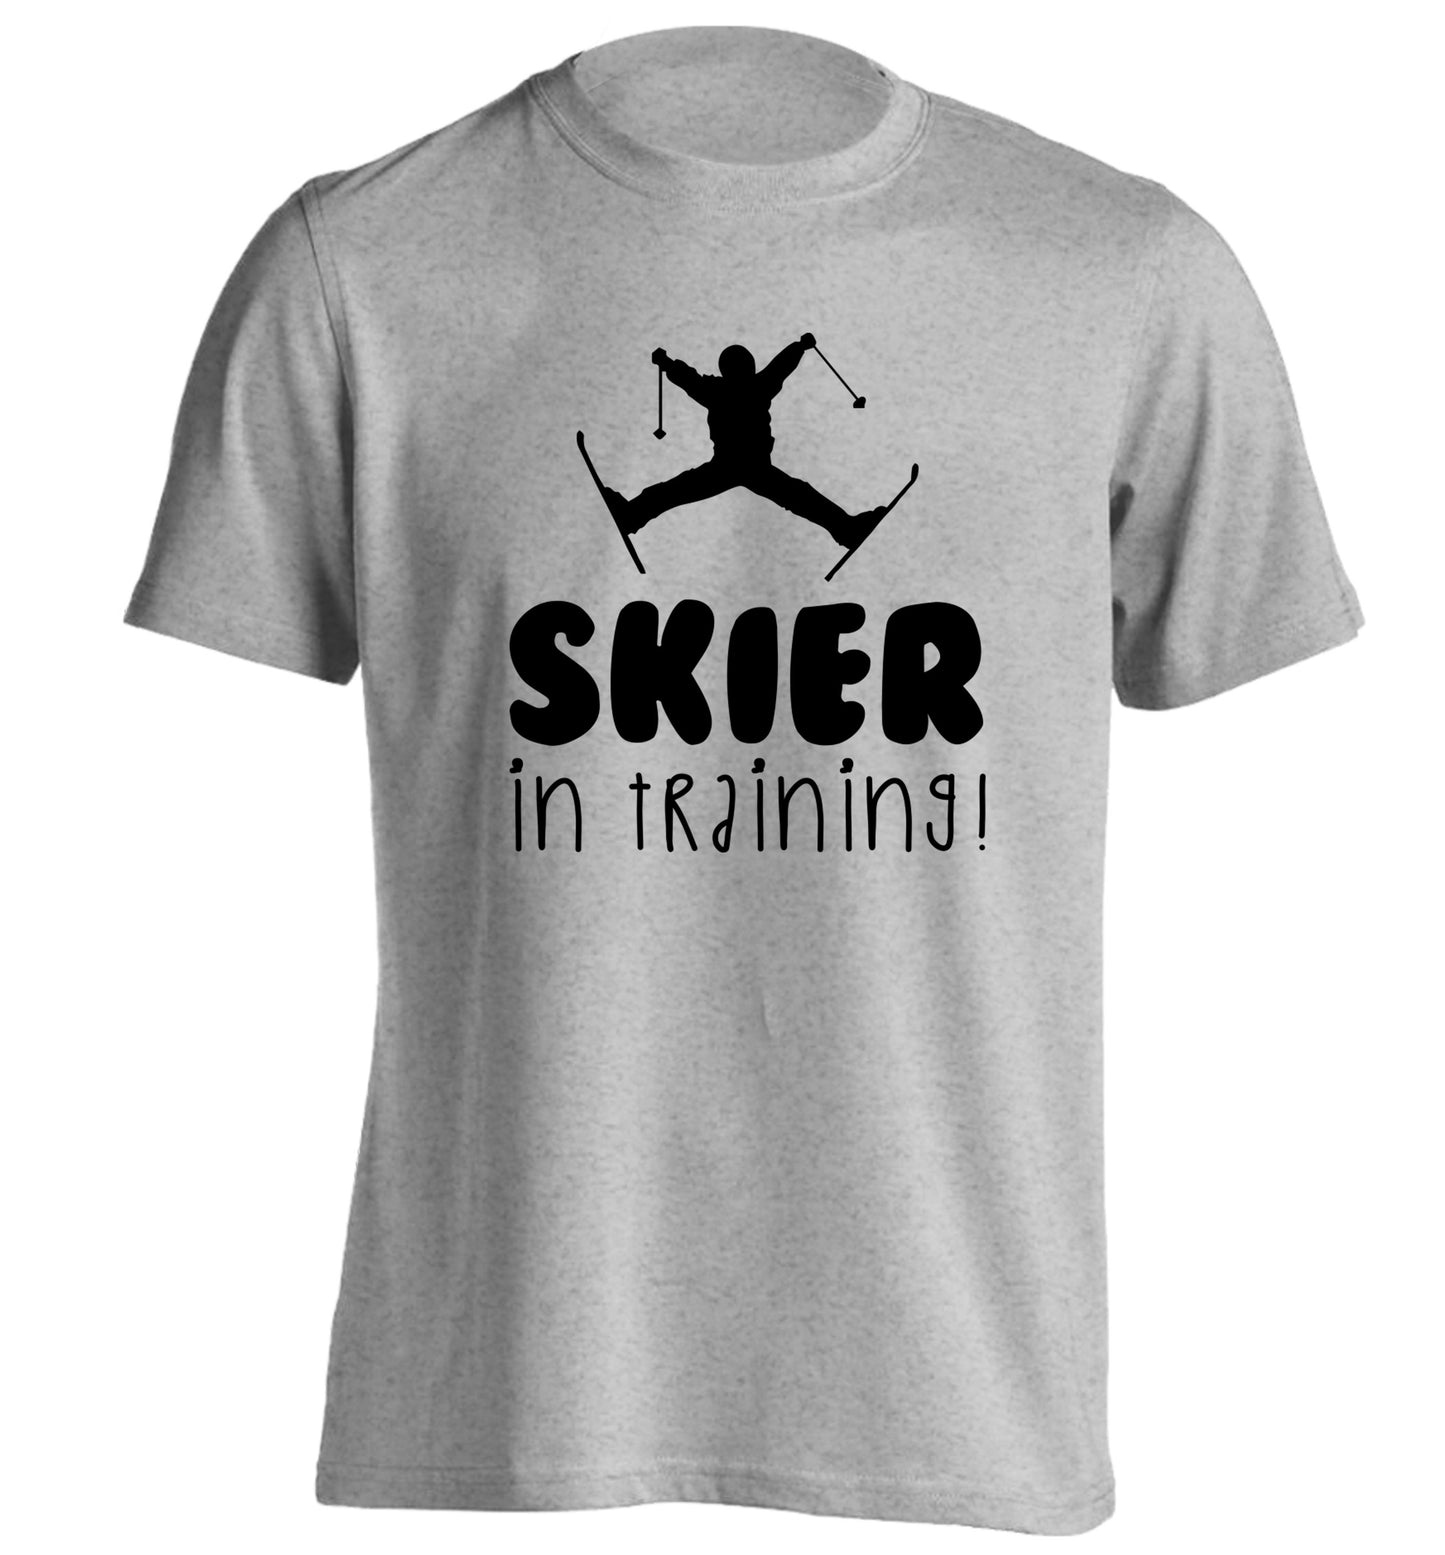 Skier in training adults unisex grey Tshirt 2XL